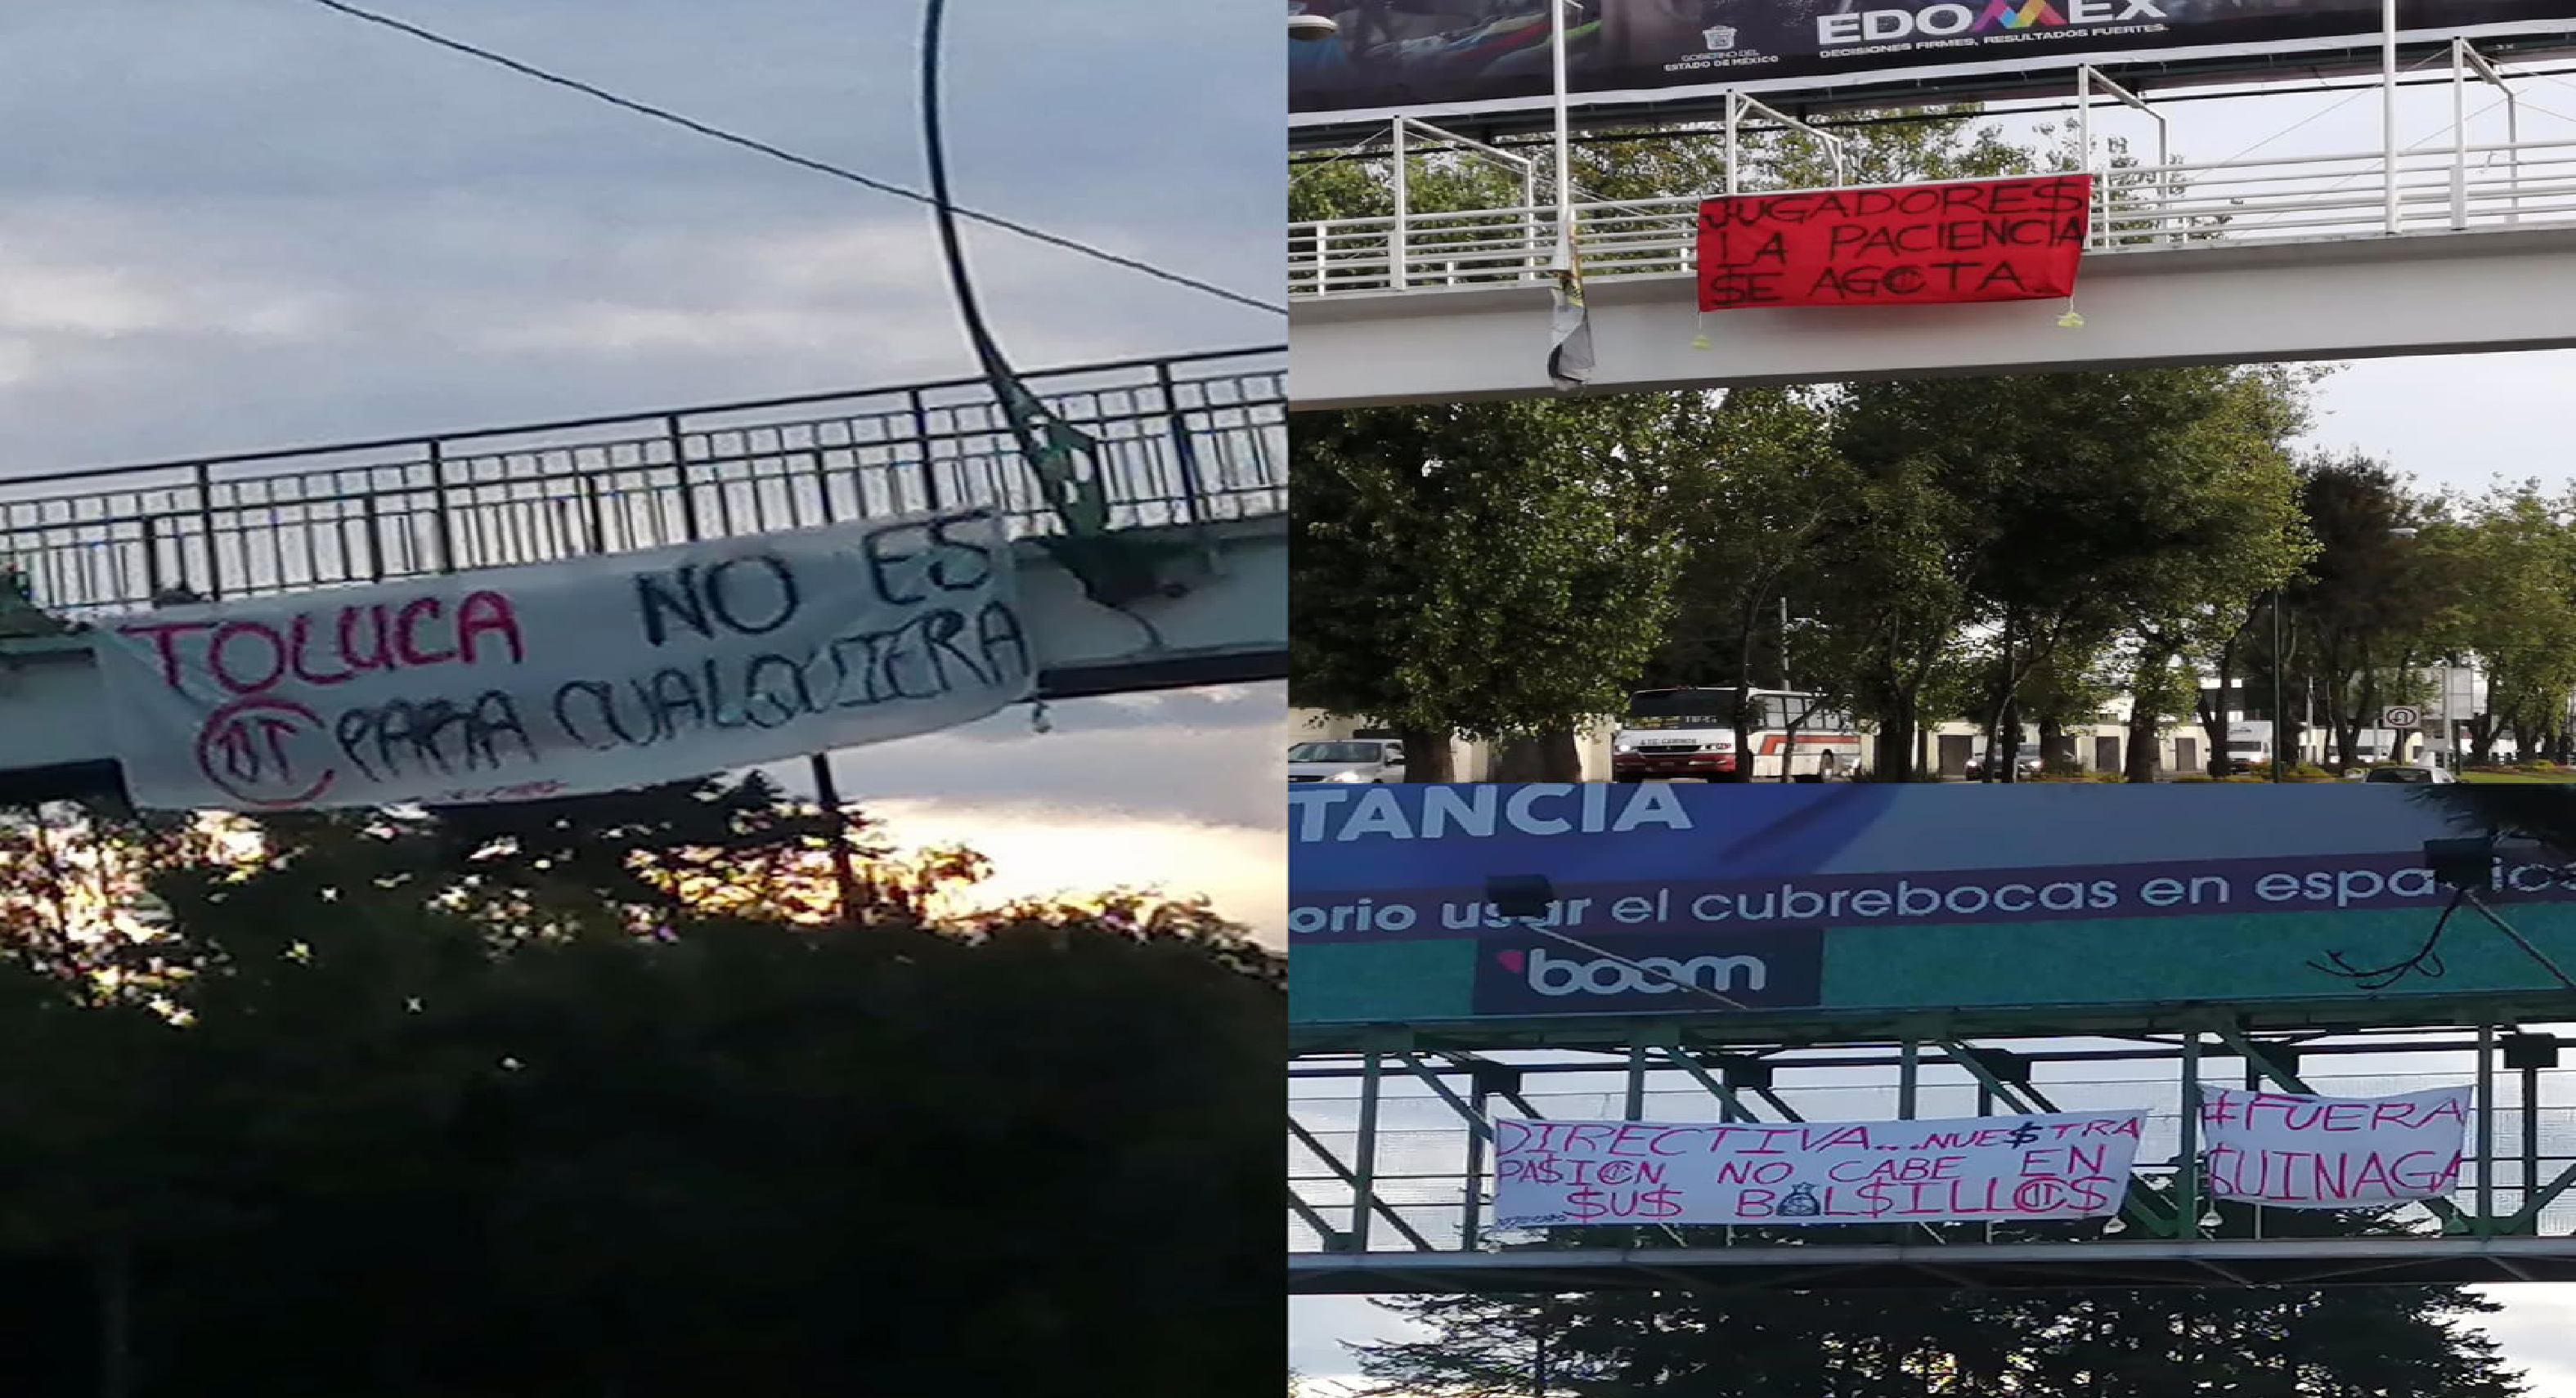 Aficionados del Toluca FC protestan con mantas tras malos resultados